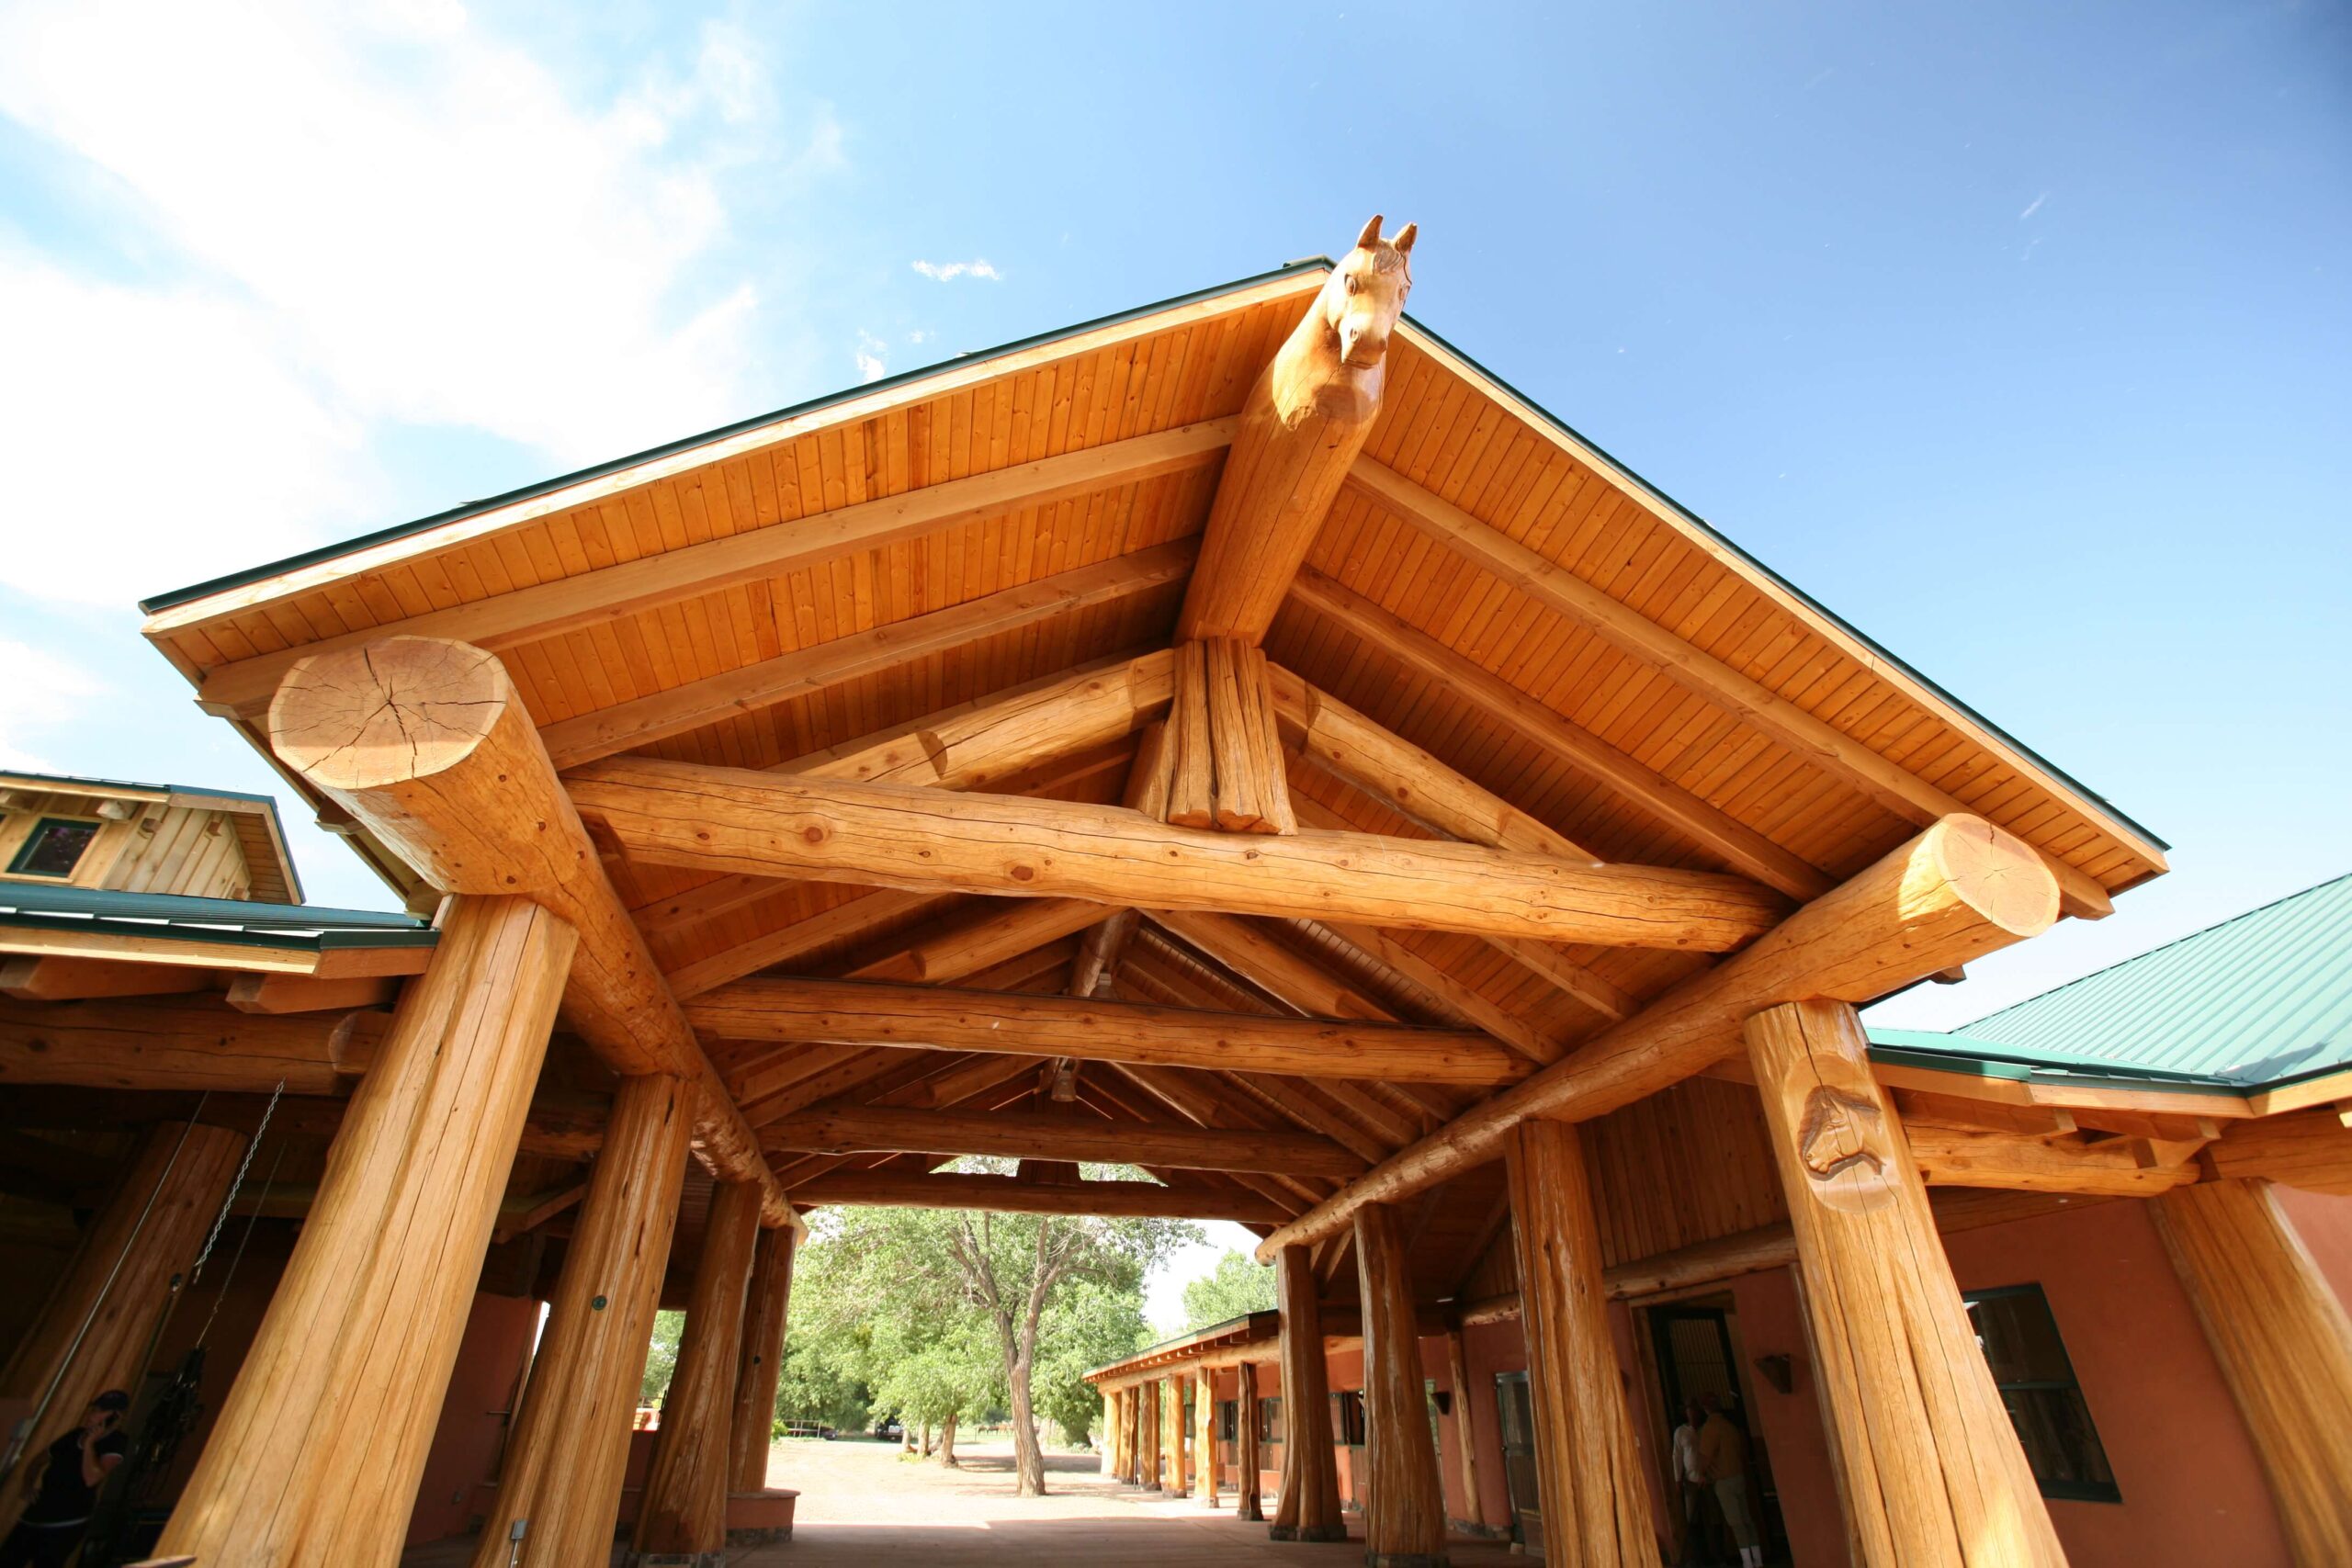 Hauptportal eines Reitstalls mit massiven Holzsäulen und einem Pferdekopf-Schnitzerei, der über den Eingangsbereich blickt, unterstrichen durch die offene Architektur und das natürliche Holzdesign